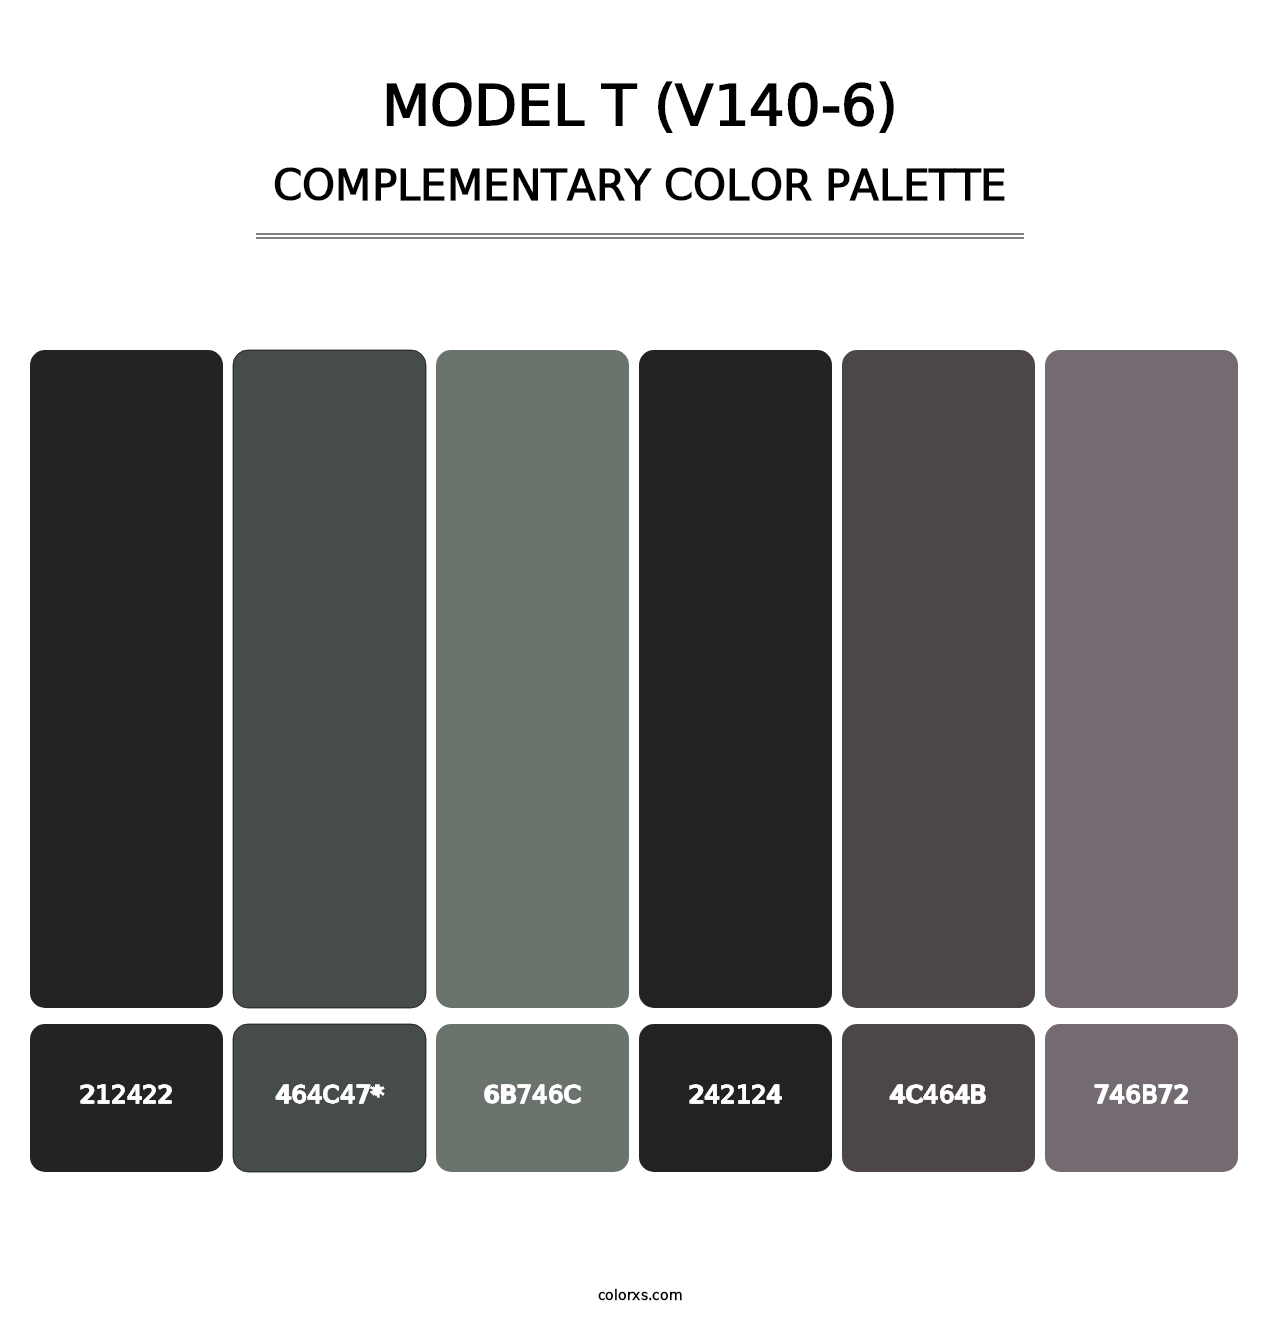 Model T (V140-6) - Complementary Color Palette